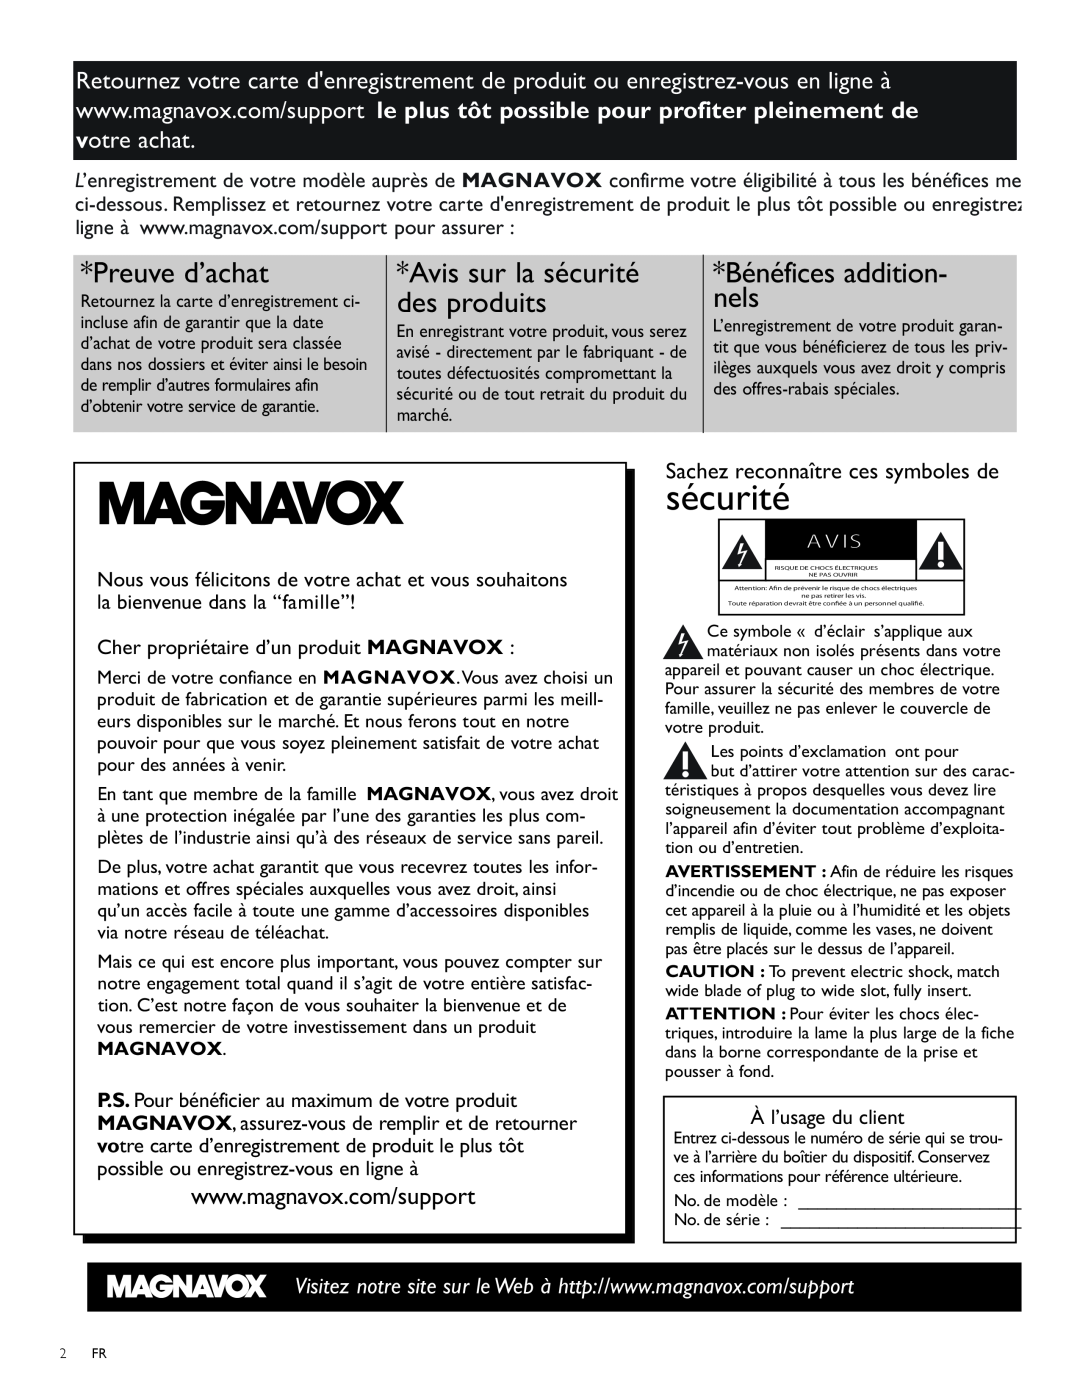 Magnavox 47MF439B Sachez reconnaître ces symboles de, Preuve d’achat, Avis sur la sécurité, Bénéfices addition, nels 